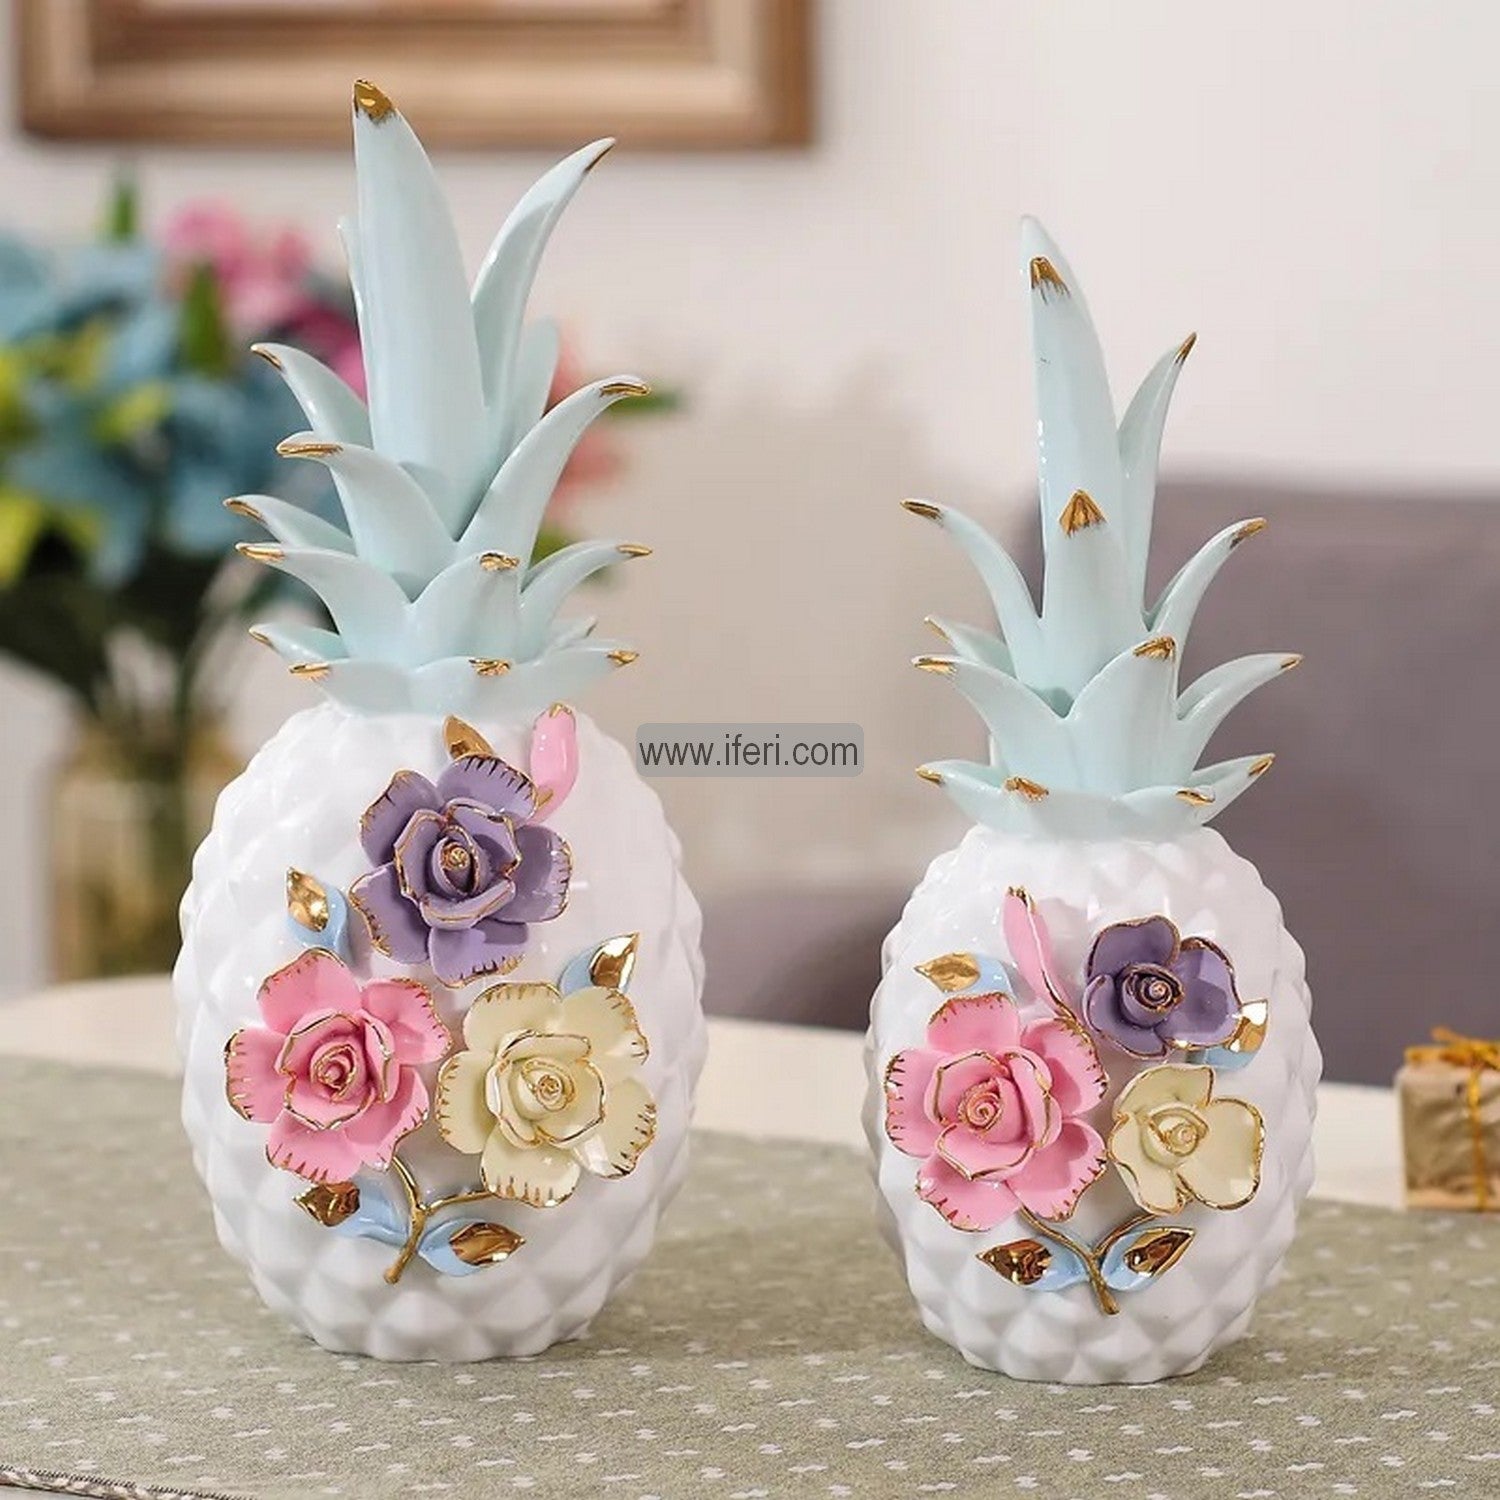 2 Pcs Ceramic Decorative Pineapple HR6427